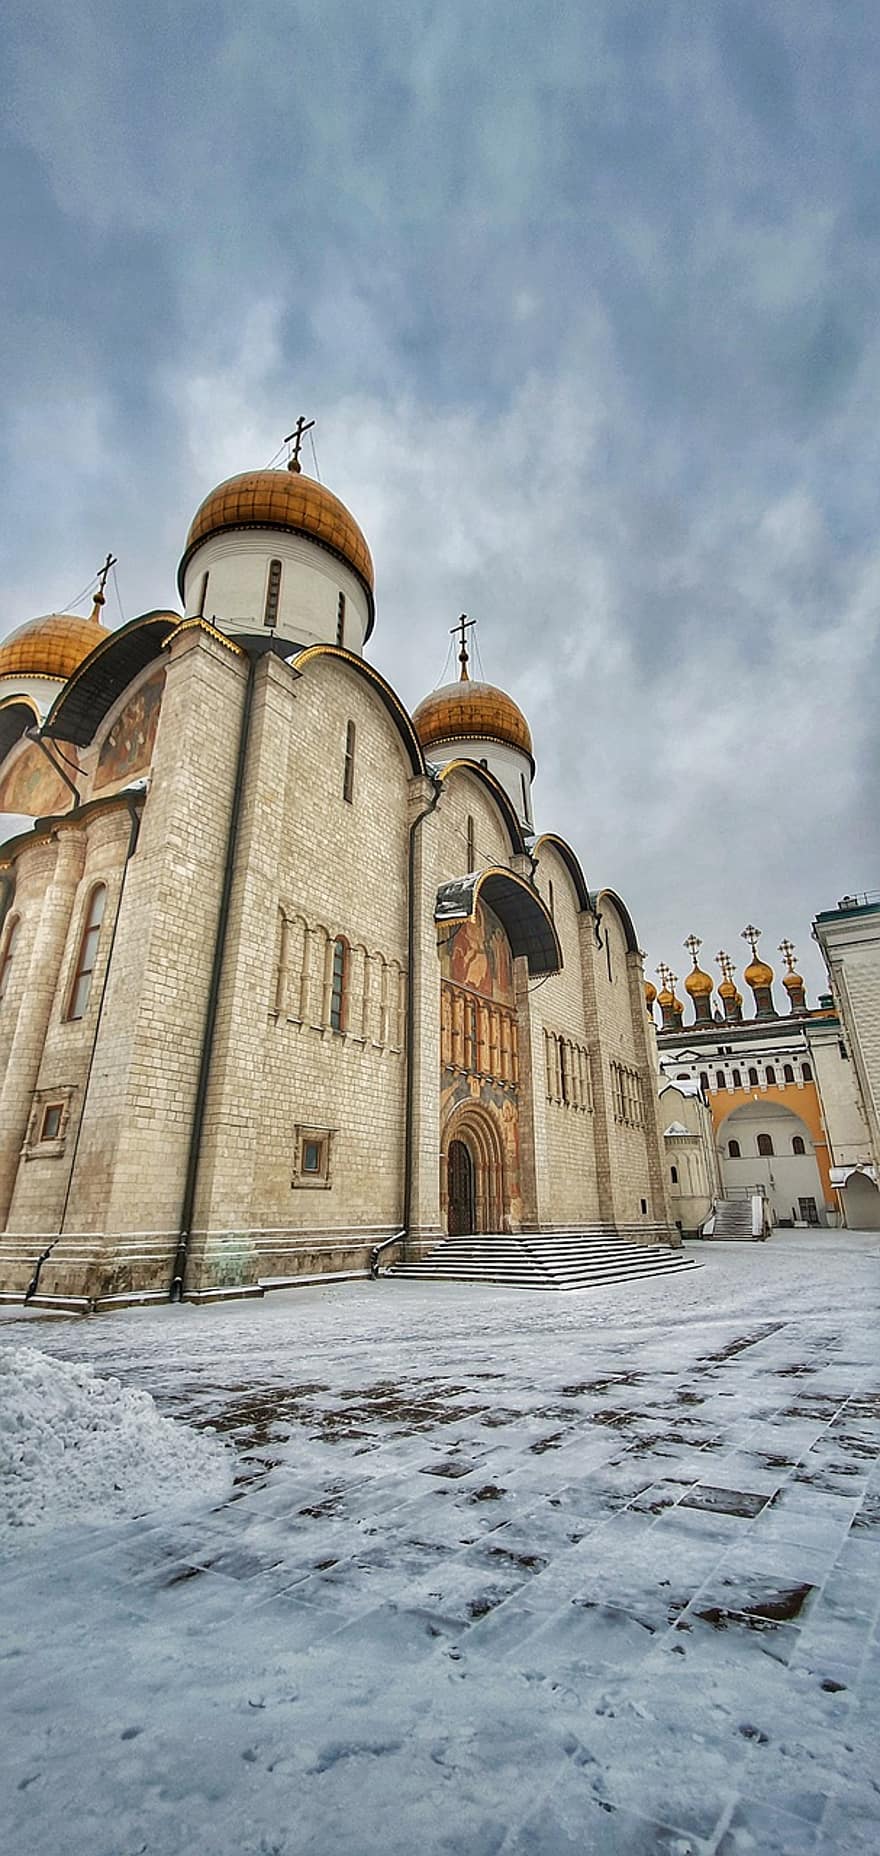 Chiesa, costruzione, Mosca, Cremlino, Russia, vecchio, architettura, cristianesimo, religione, culture, posto famoso